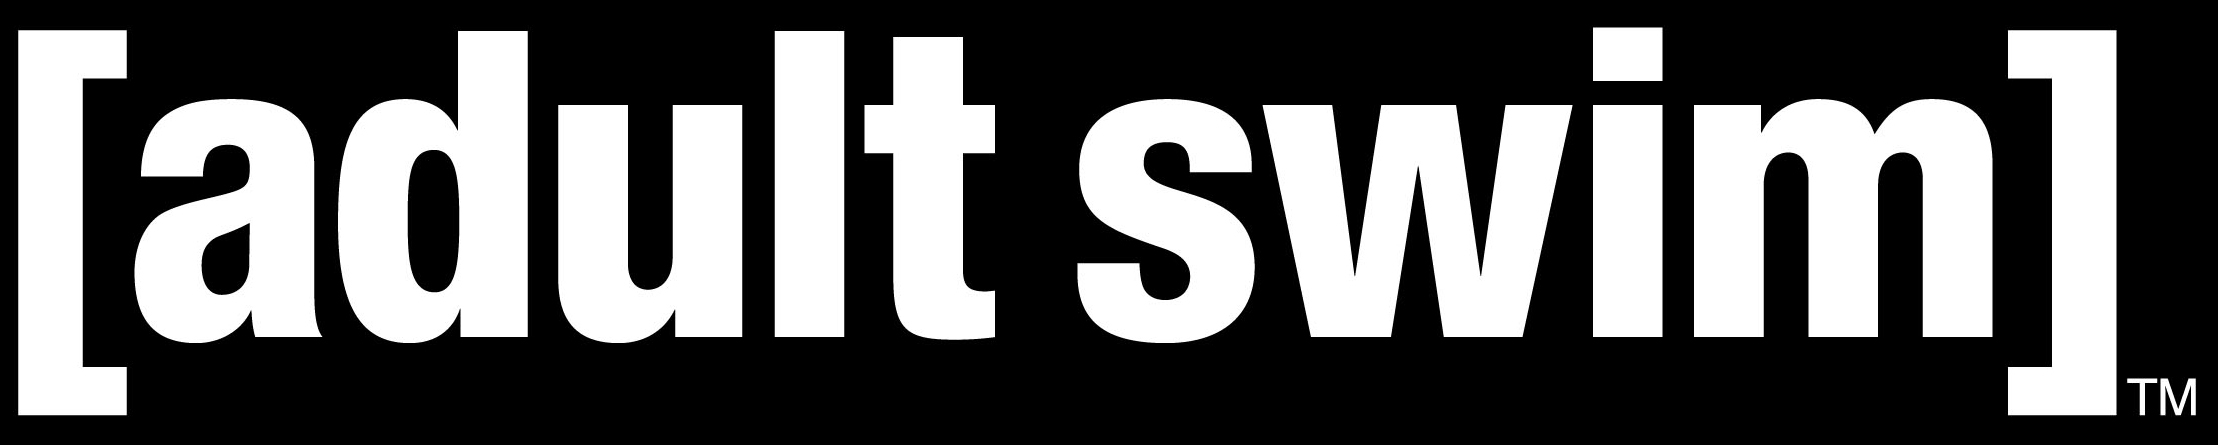 Channel logo for Adult Swin